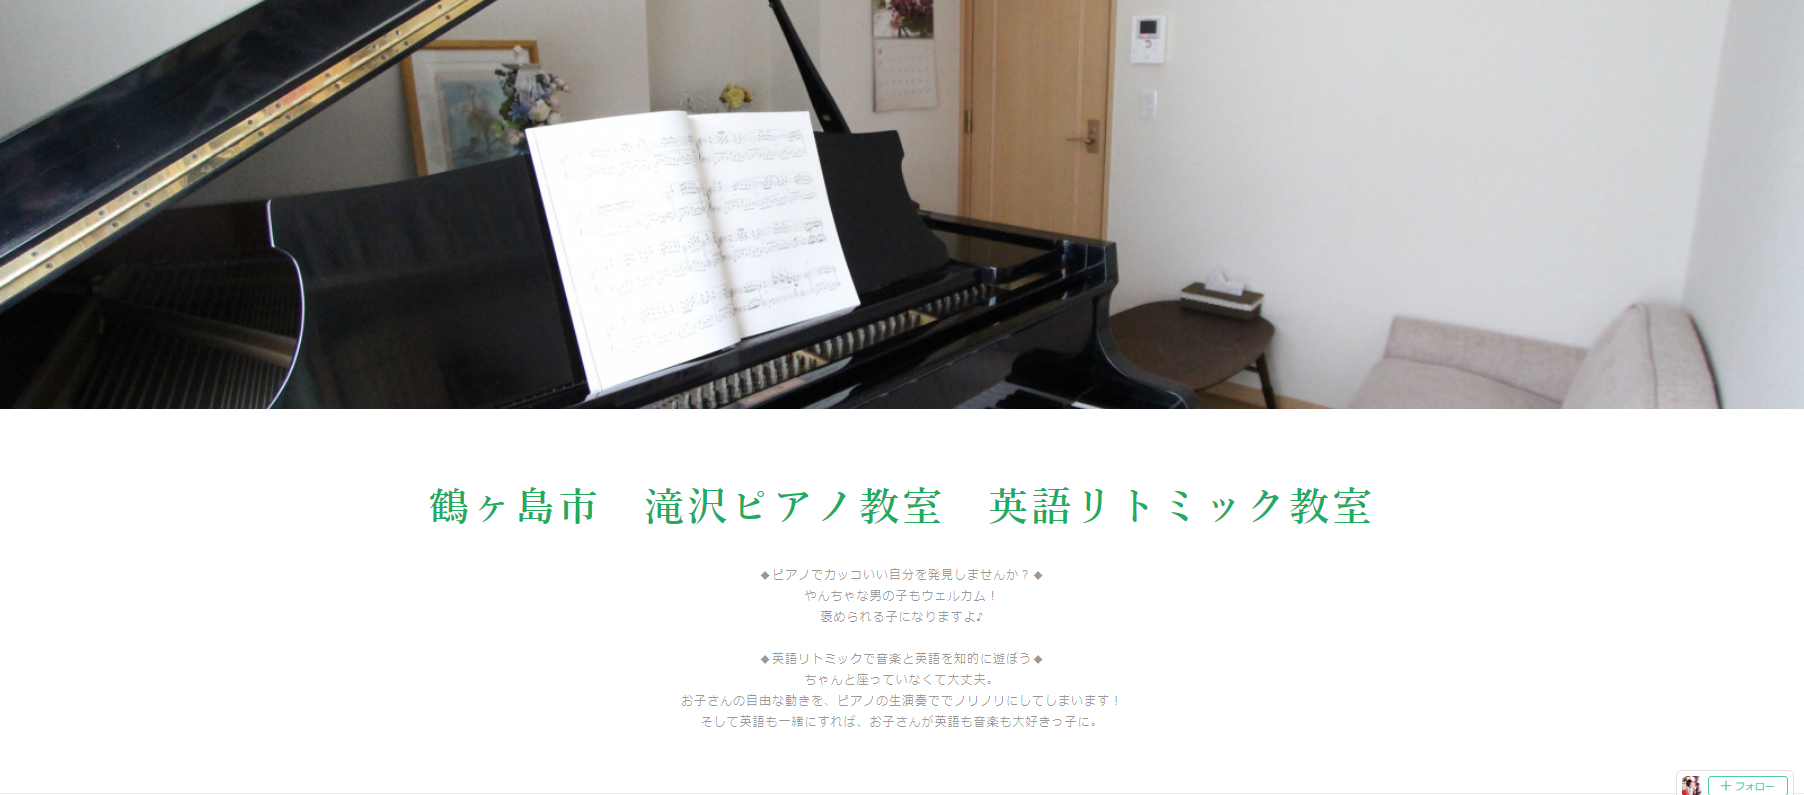 滝沢ピアノ教室のサムネイル